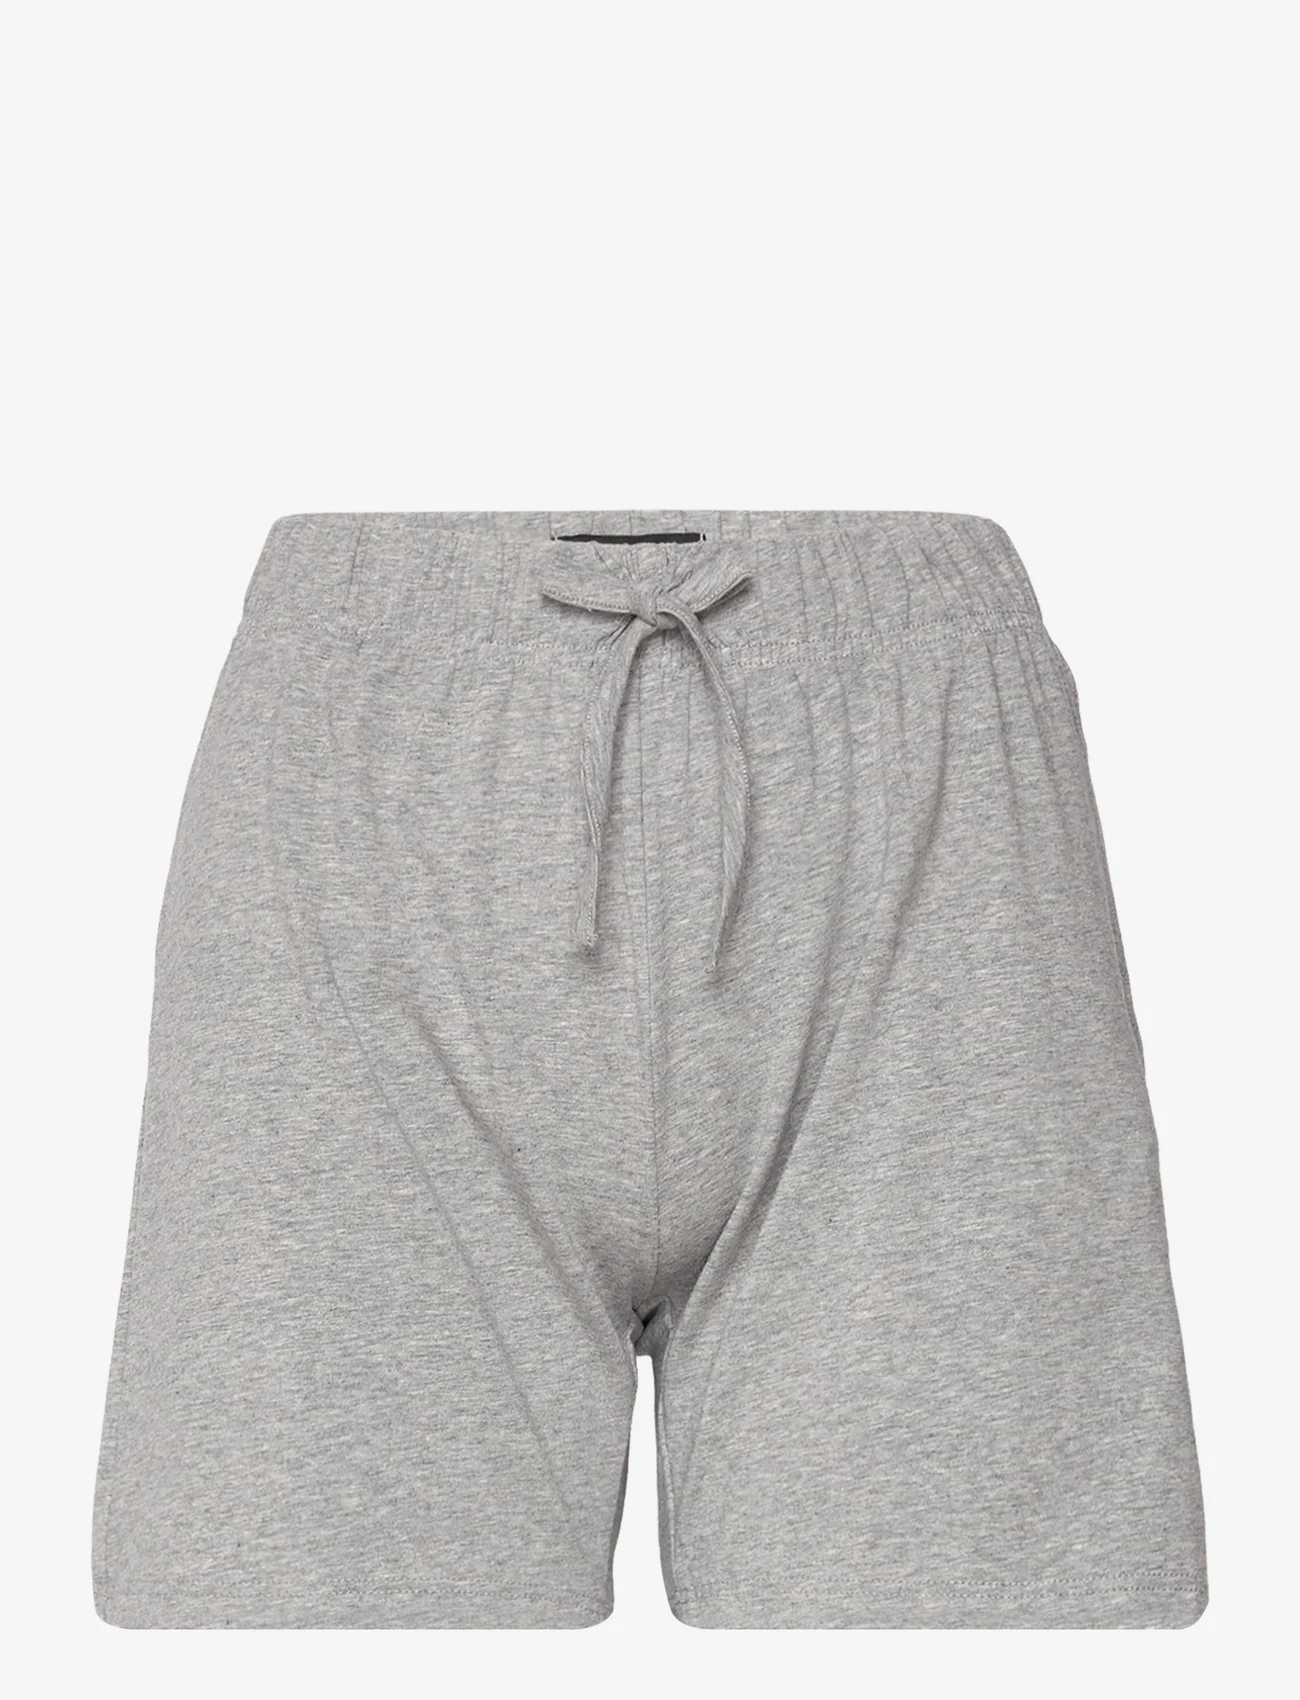 Decoy - DECOY pj shorts - lägsta priserna - light grey - 0